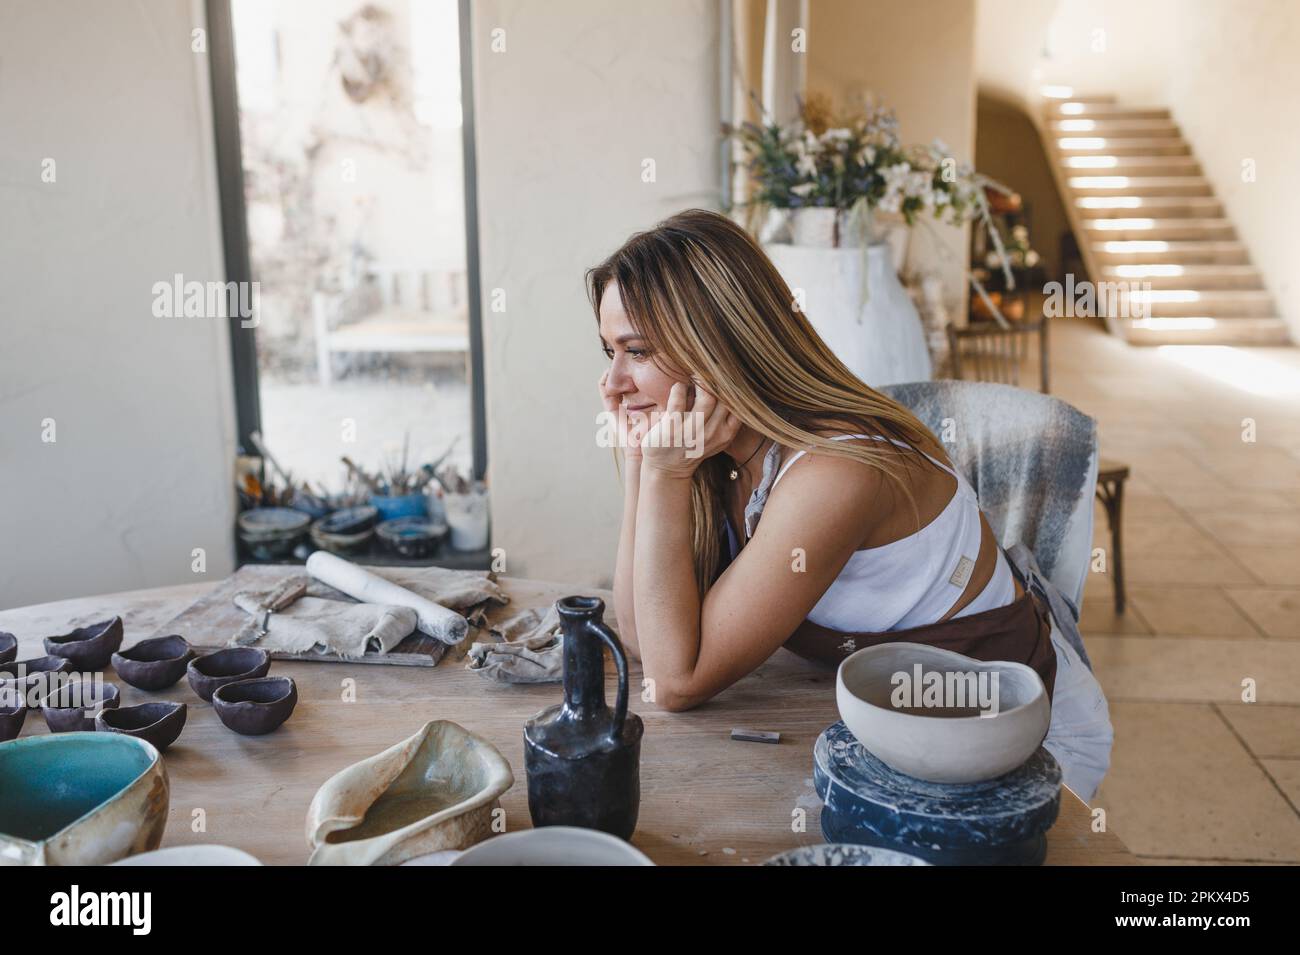 portrait d'une jeune fille céramiste assise à une table Banque D'Images